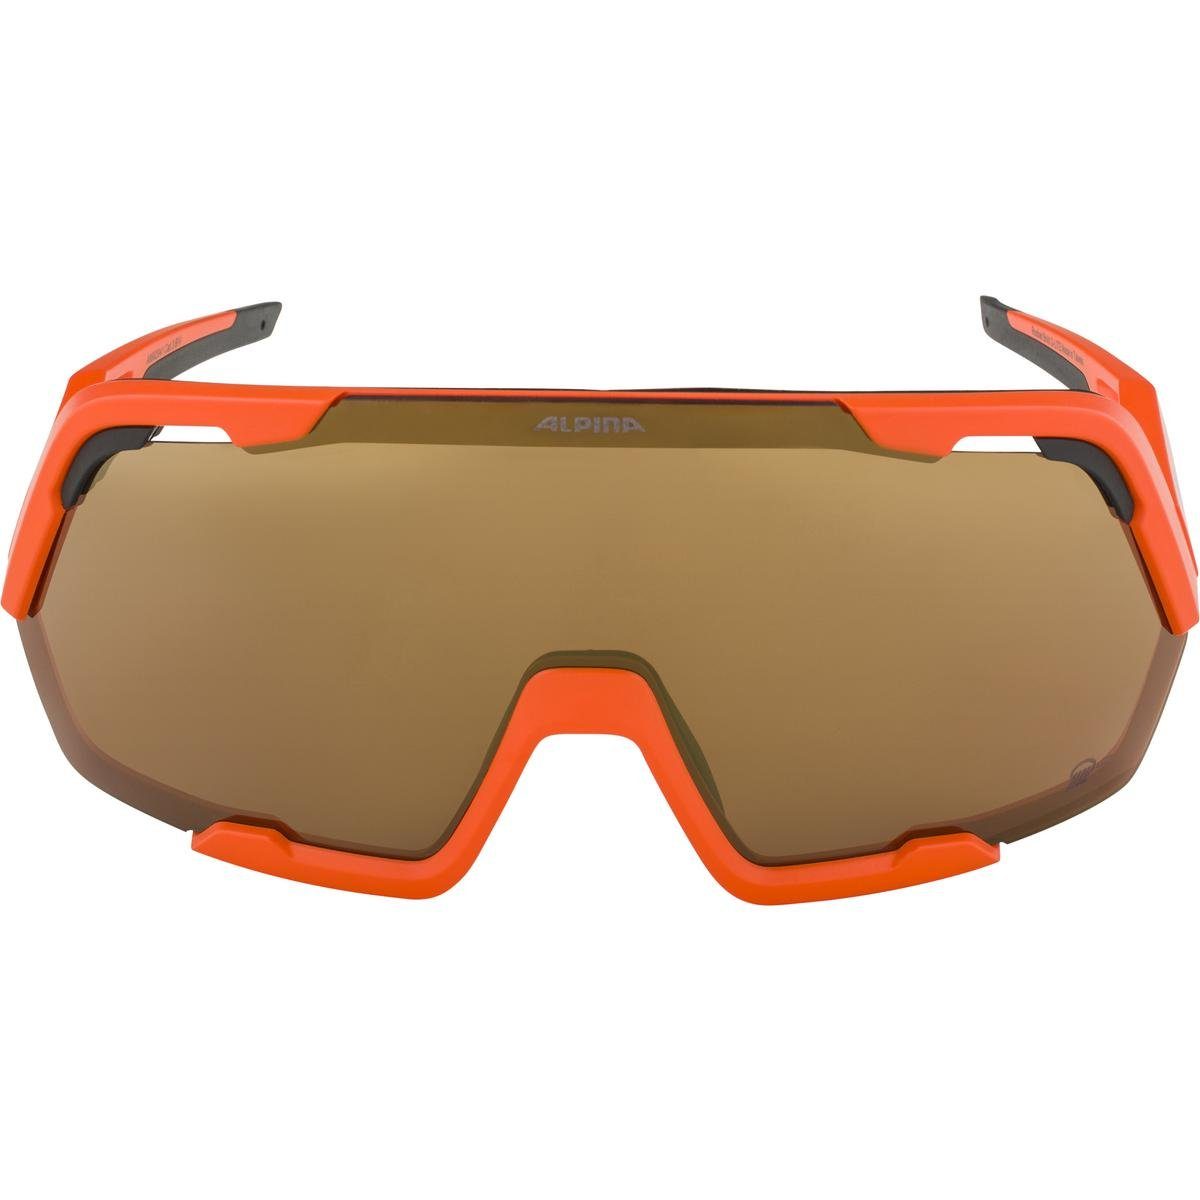 Sportbrille Sonnenbrille BOLD Q-LITE orange Alpina A8682 Alpina ROCKET